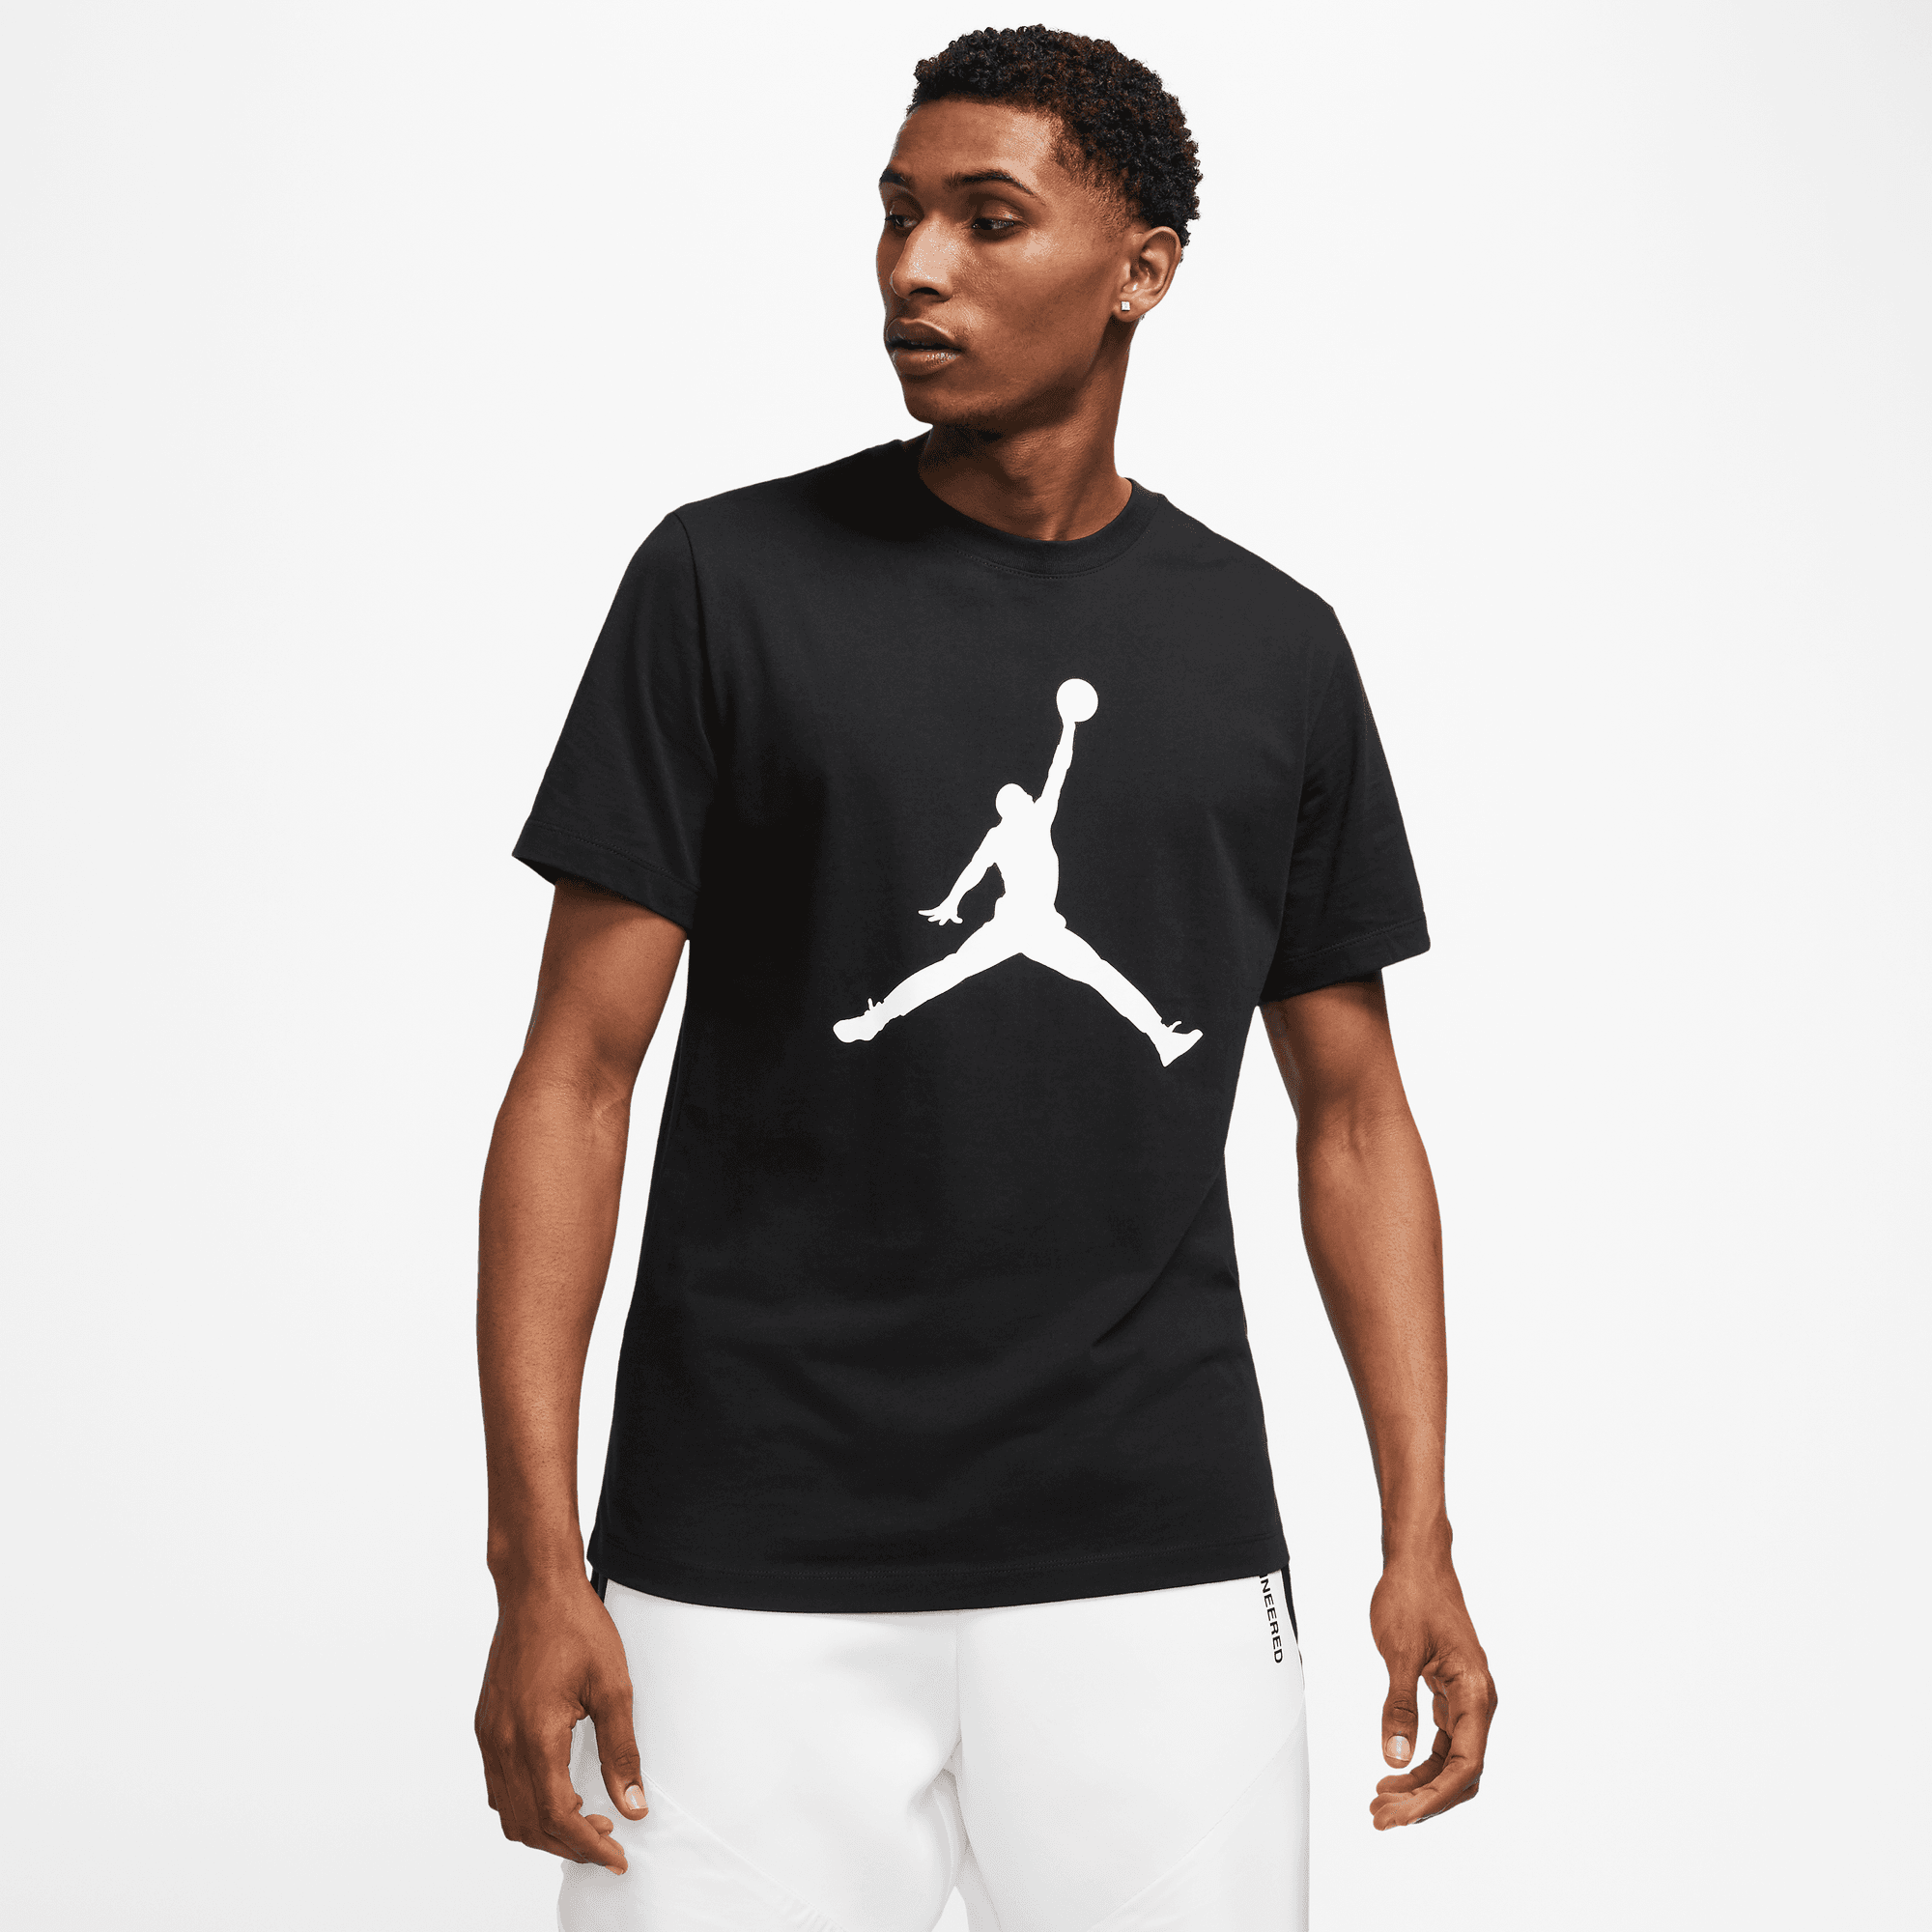 Dry T-Shirt Theory Jordan 23 Kick – Air